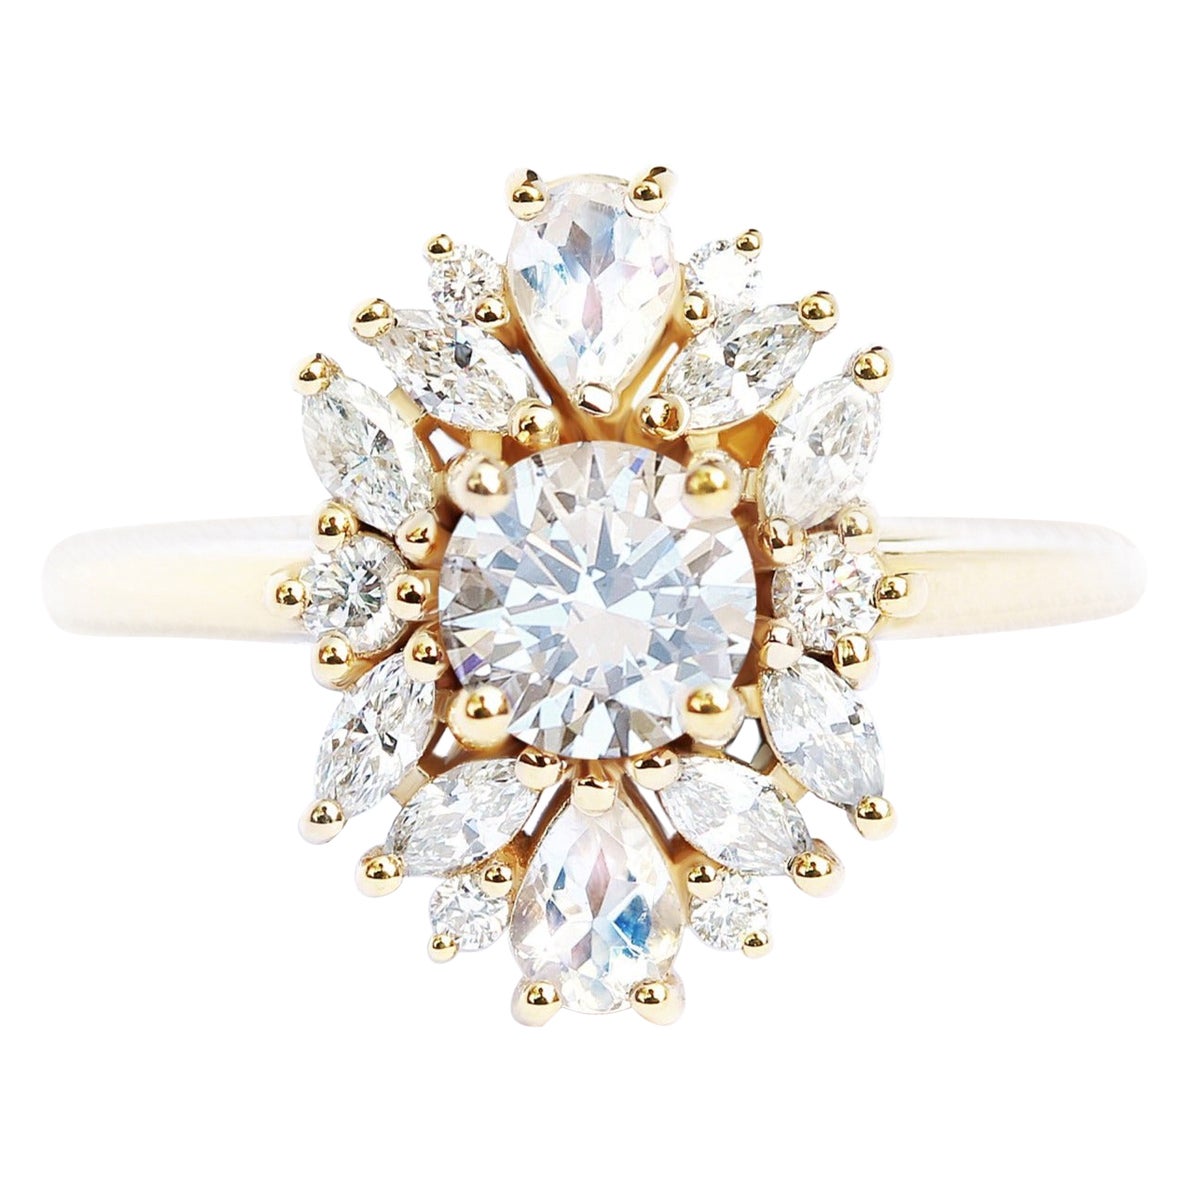 Diamond Cluster Unique and Elegant Engagement Ring, Alternative Bride "Odisea"